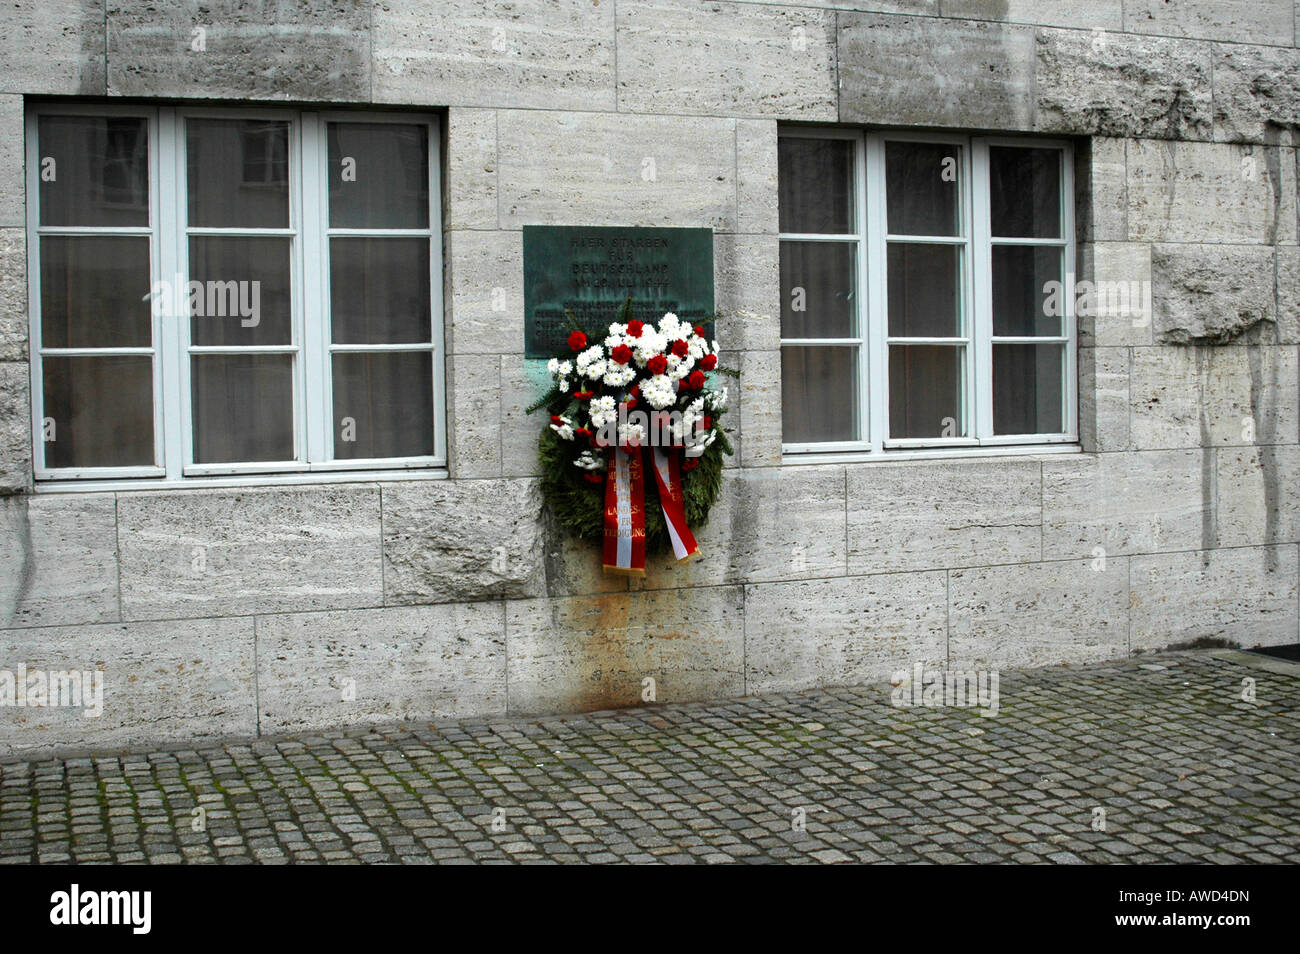 Gedenktafel für die Opfer des 20. Juli 1944 fehlgeschlagen Mordanschlag von Hitler, Berlin, Deutschland, Europa Stockfoto